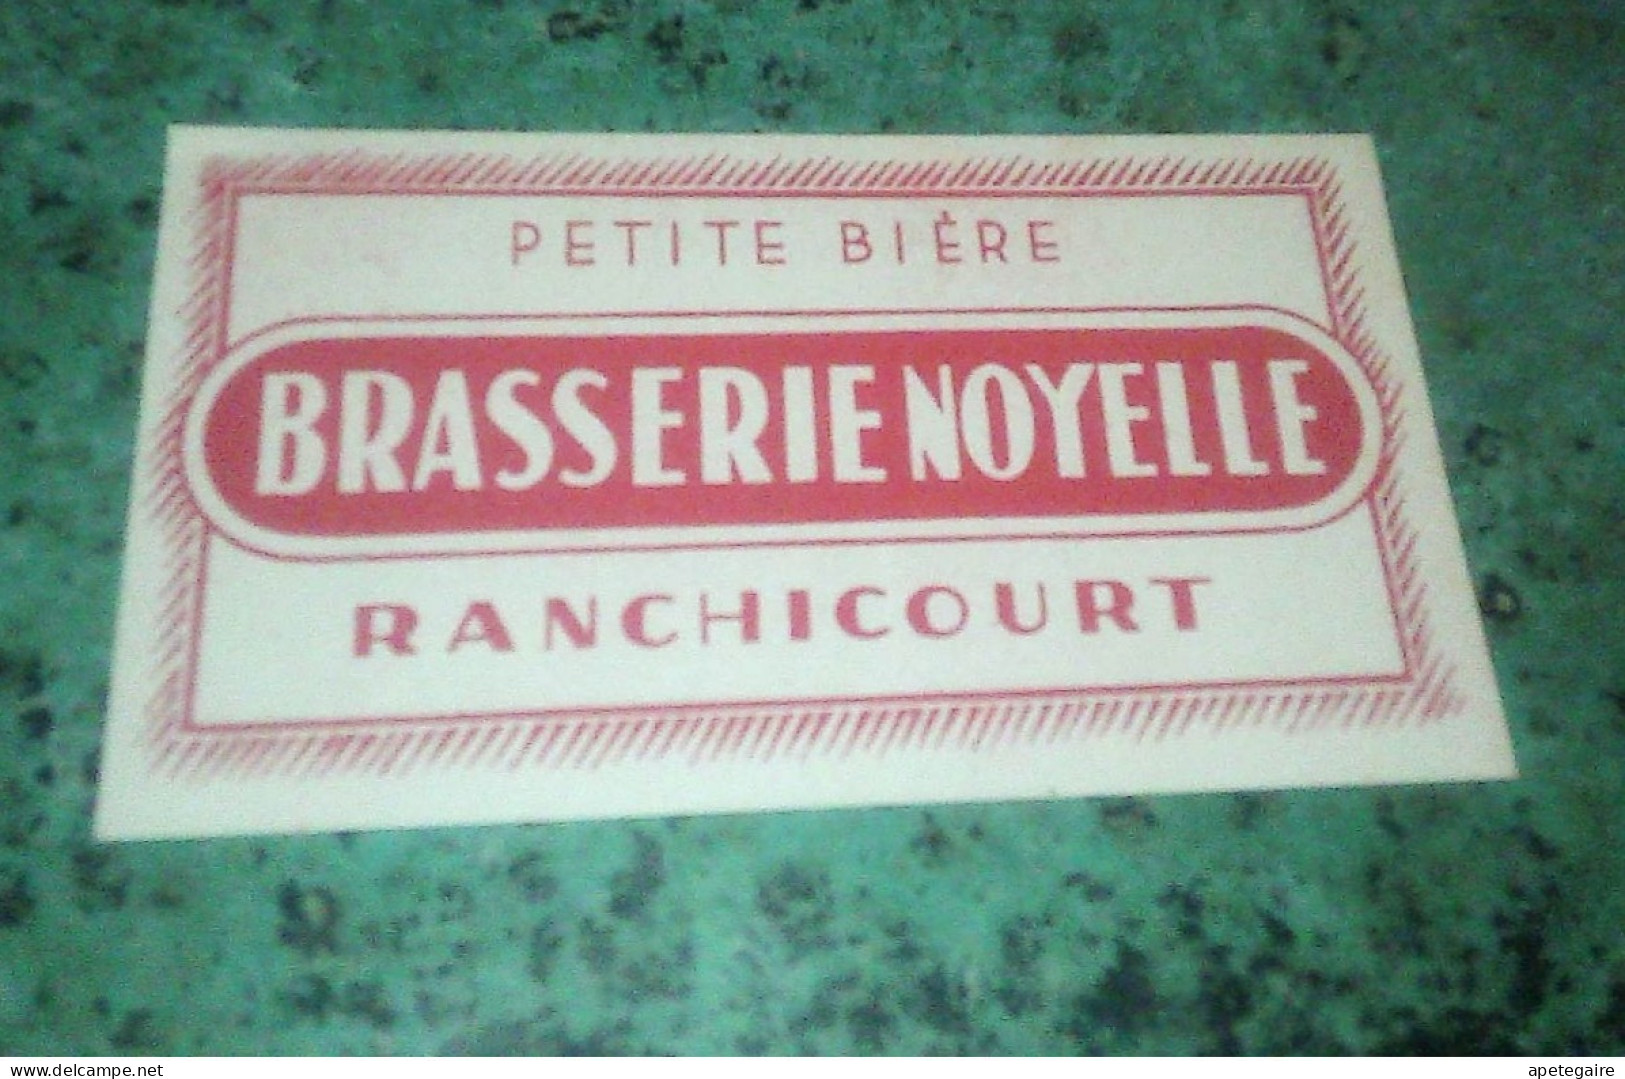 Ranchicourt  Brasserie  Noyelle.  Ancienne étiquette De Bière  Petite Bière - Bier